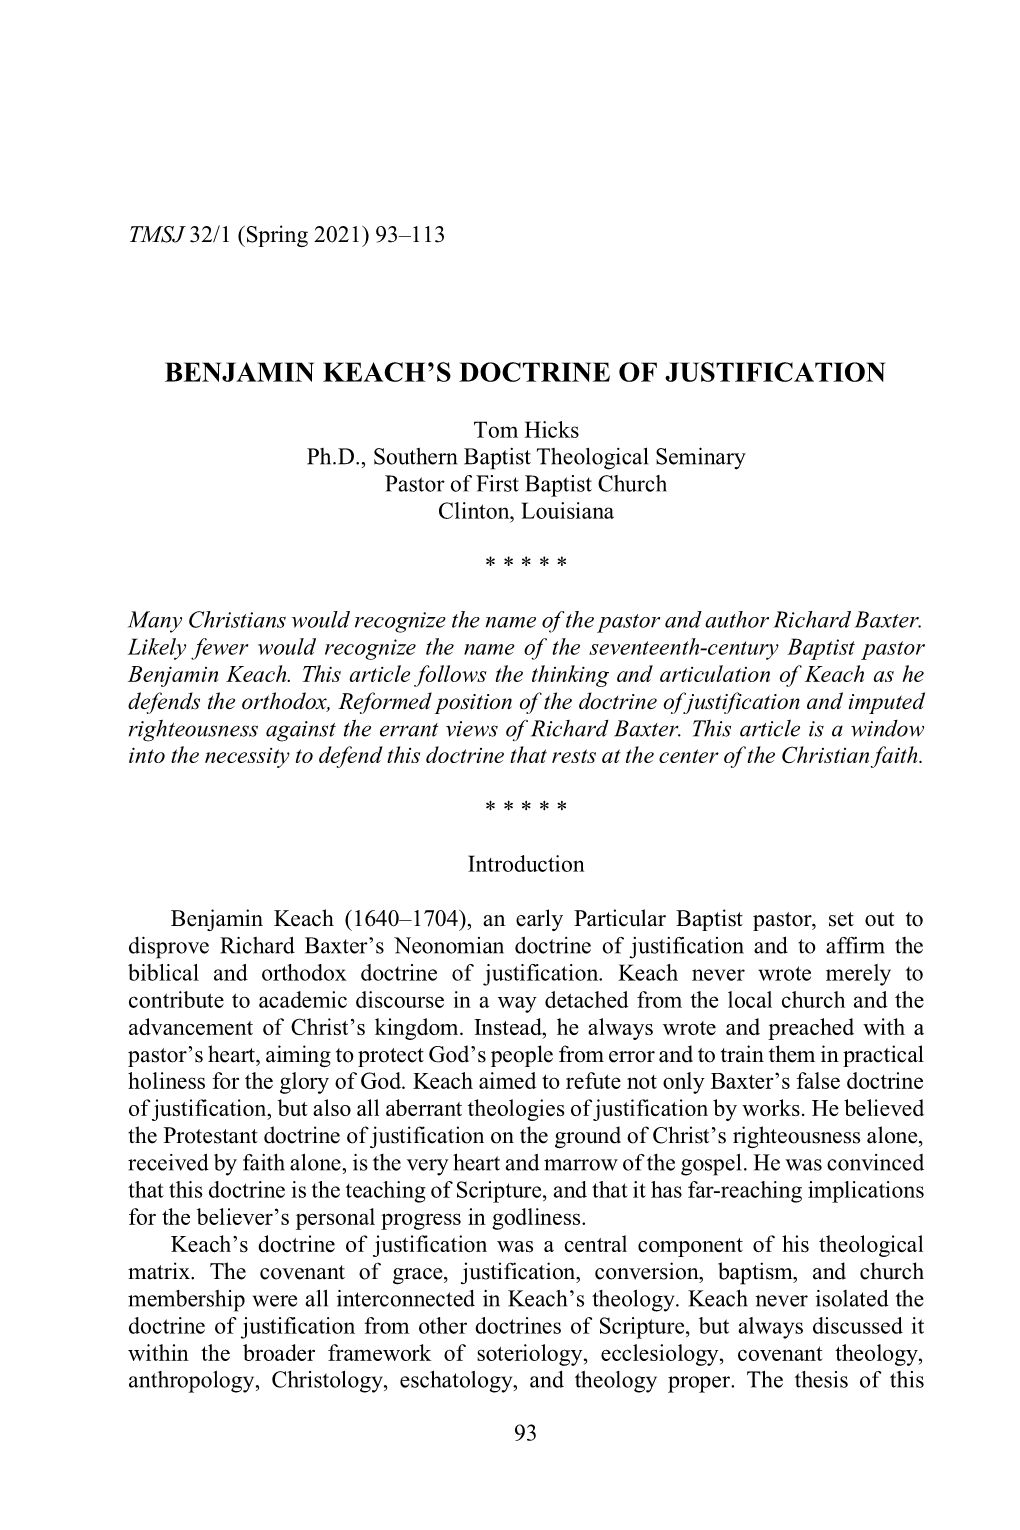 Benjamin Keach's Doctrine of Justification